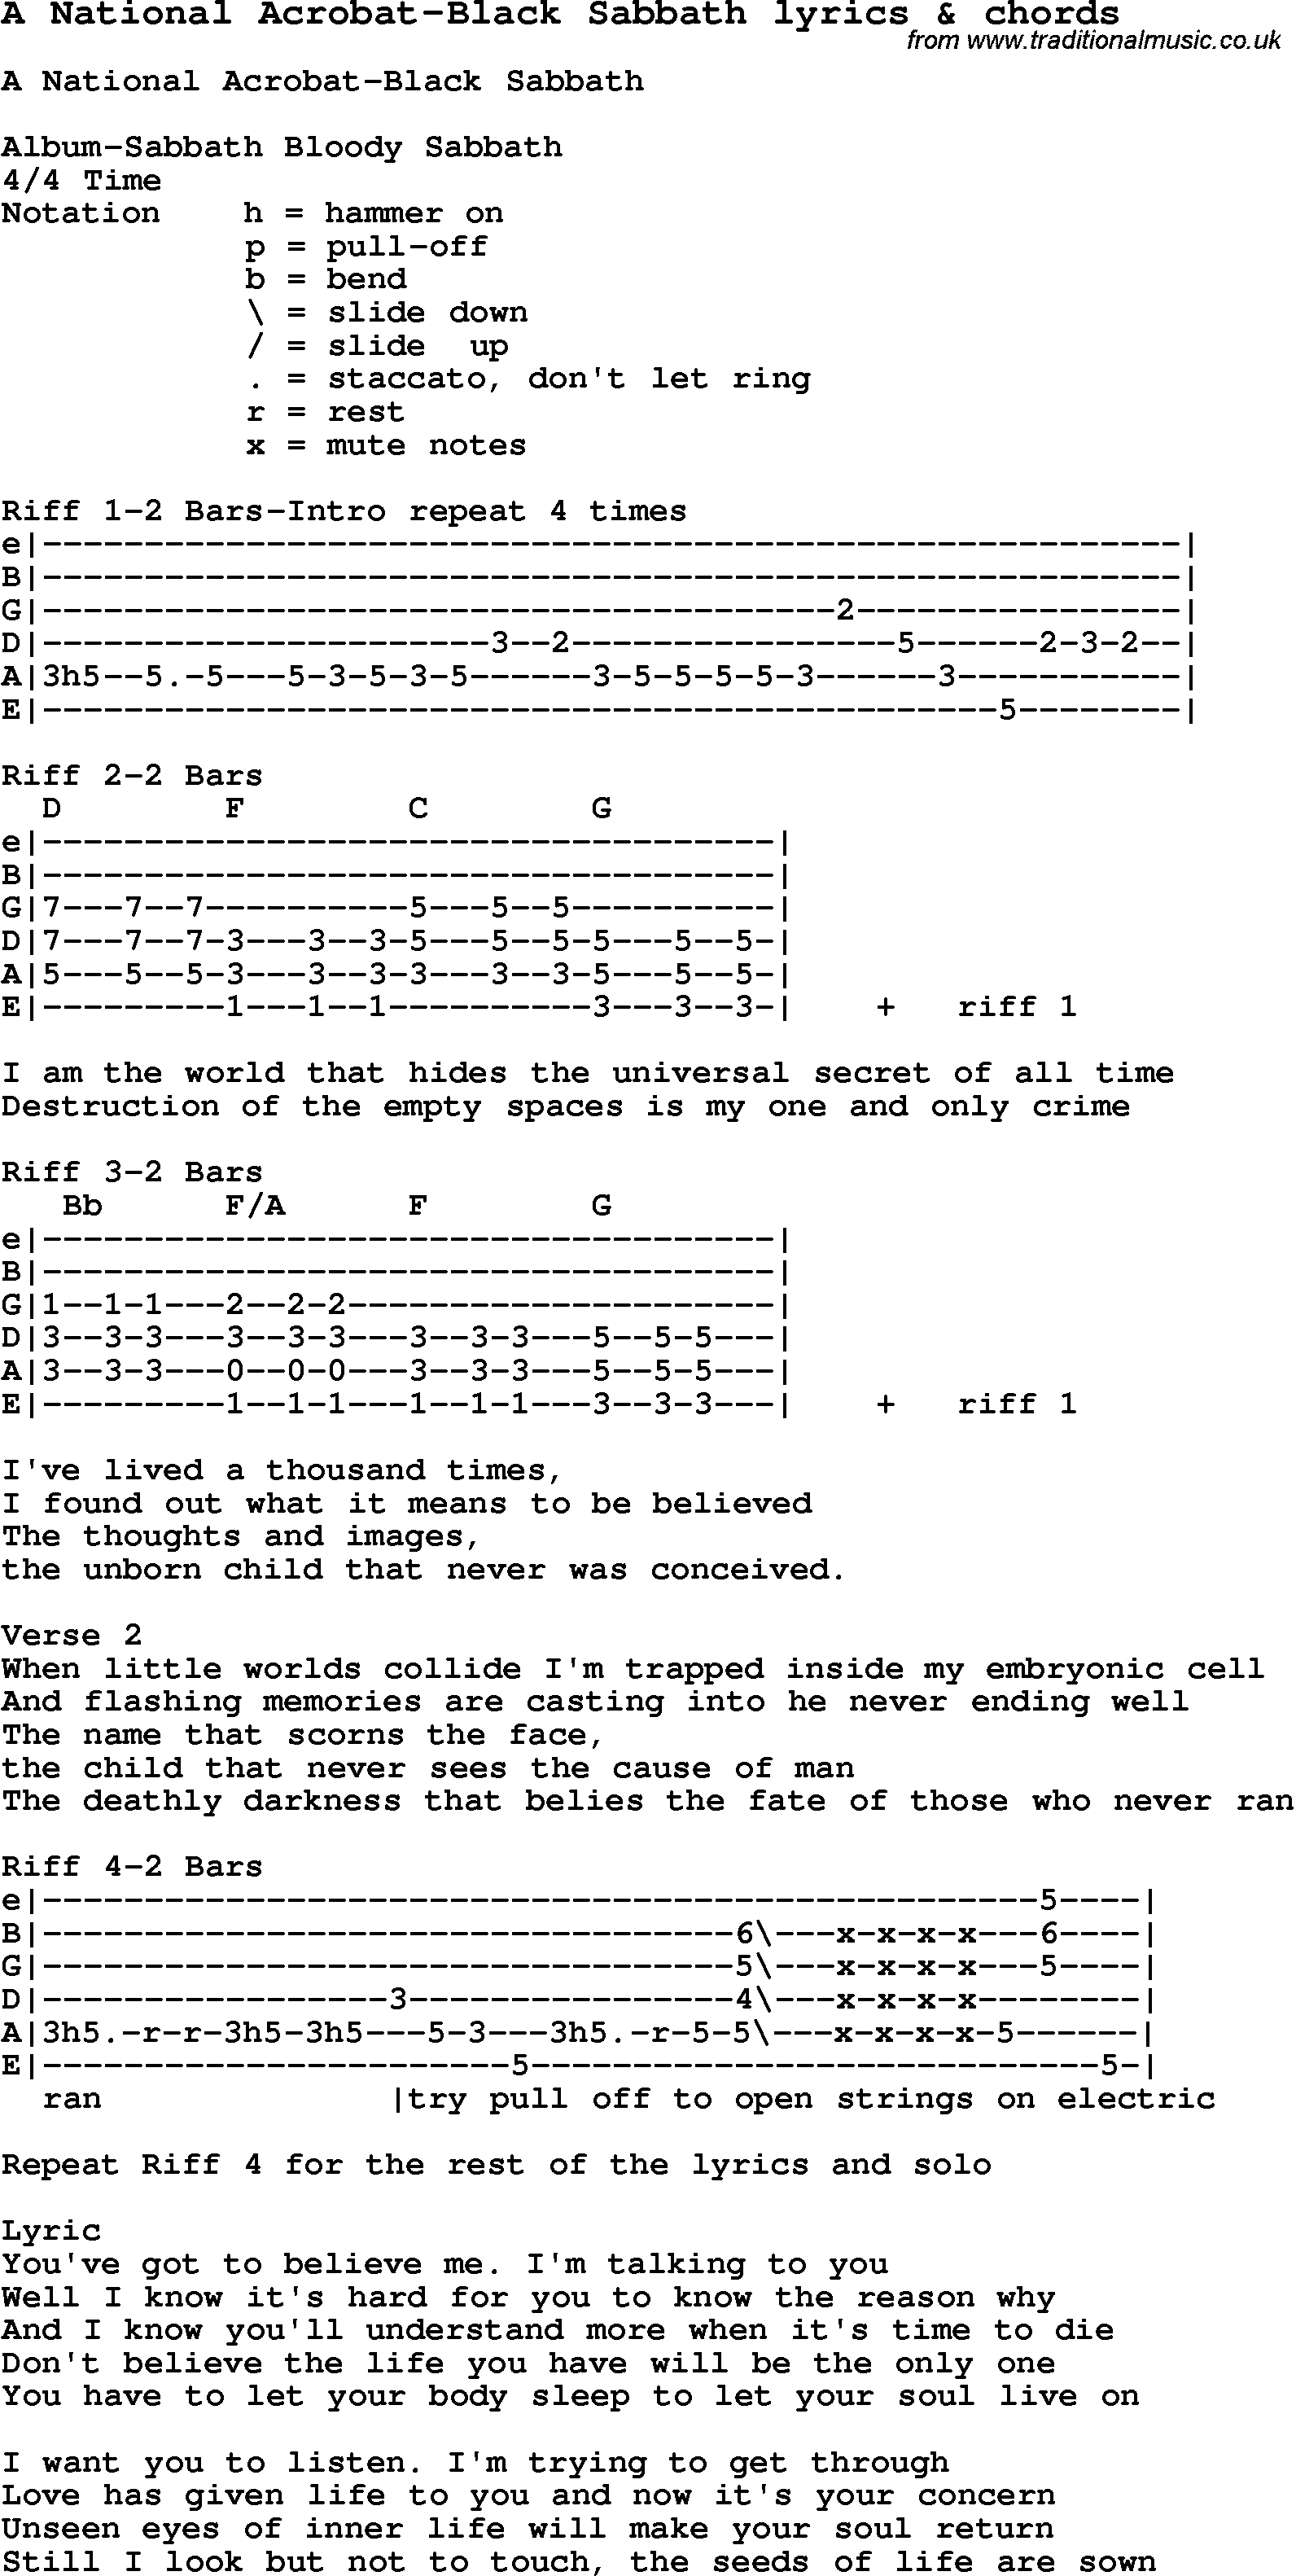 Love Song Lyrics for: A National Acrobat-Black Sabbath with chords for Ukulele, Guitar Banjo etc.